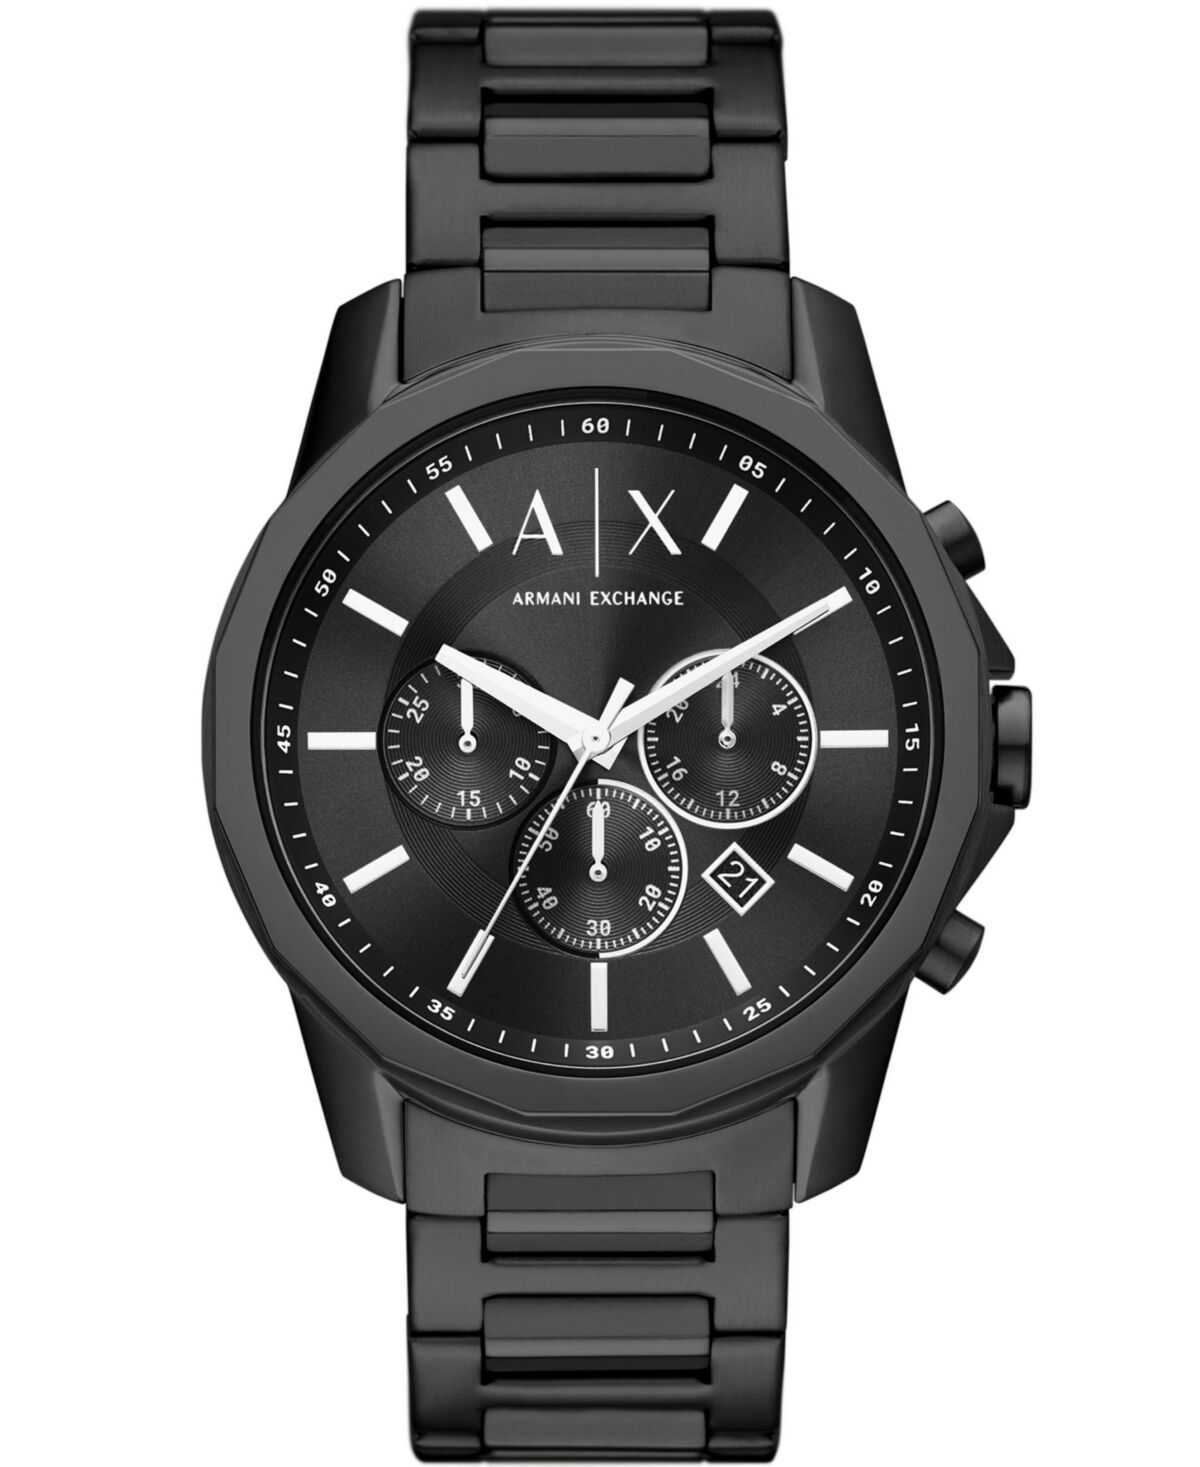 A|x Armani Exchange A X Armani Exchange Men's Chronograph Black Stainless Steel Bracelet Watch 44mm - Black